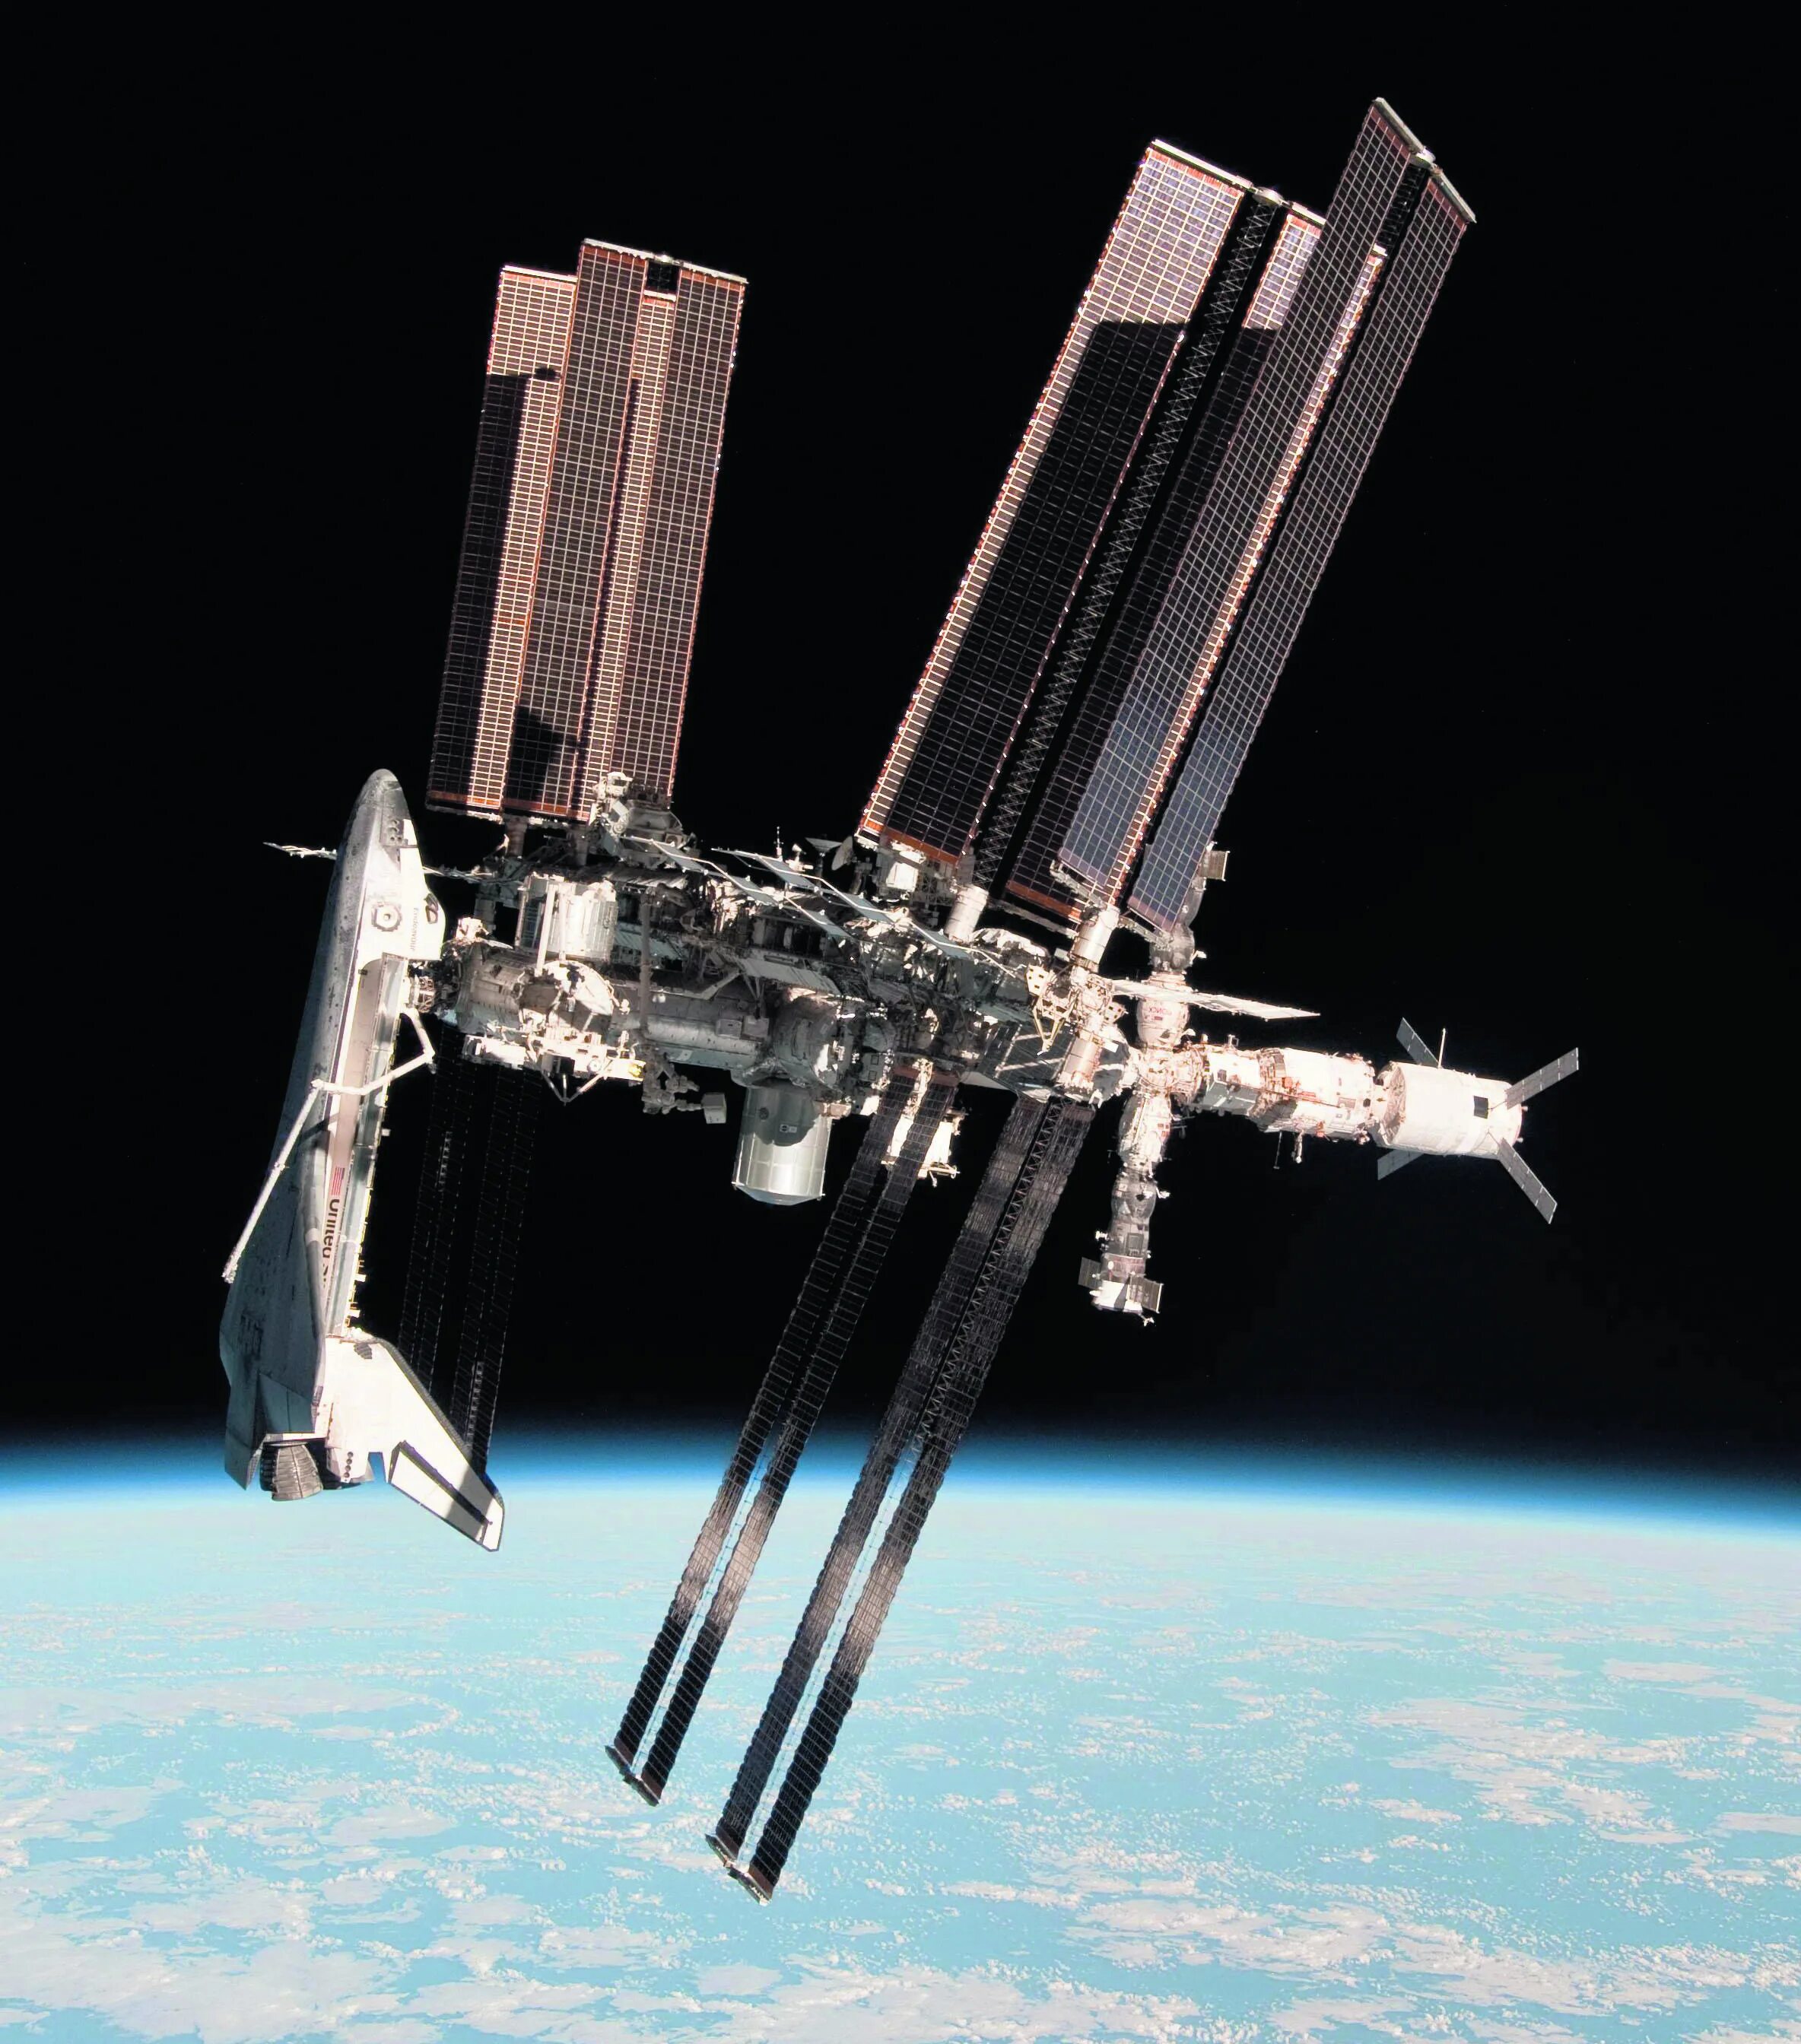 Как называется международная станция. Шаттл пристыкованный к МКС. Космический корабль NASA. Стыковка шаттла с МКС. Место стыковки шаттлов с МКС.